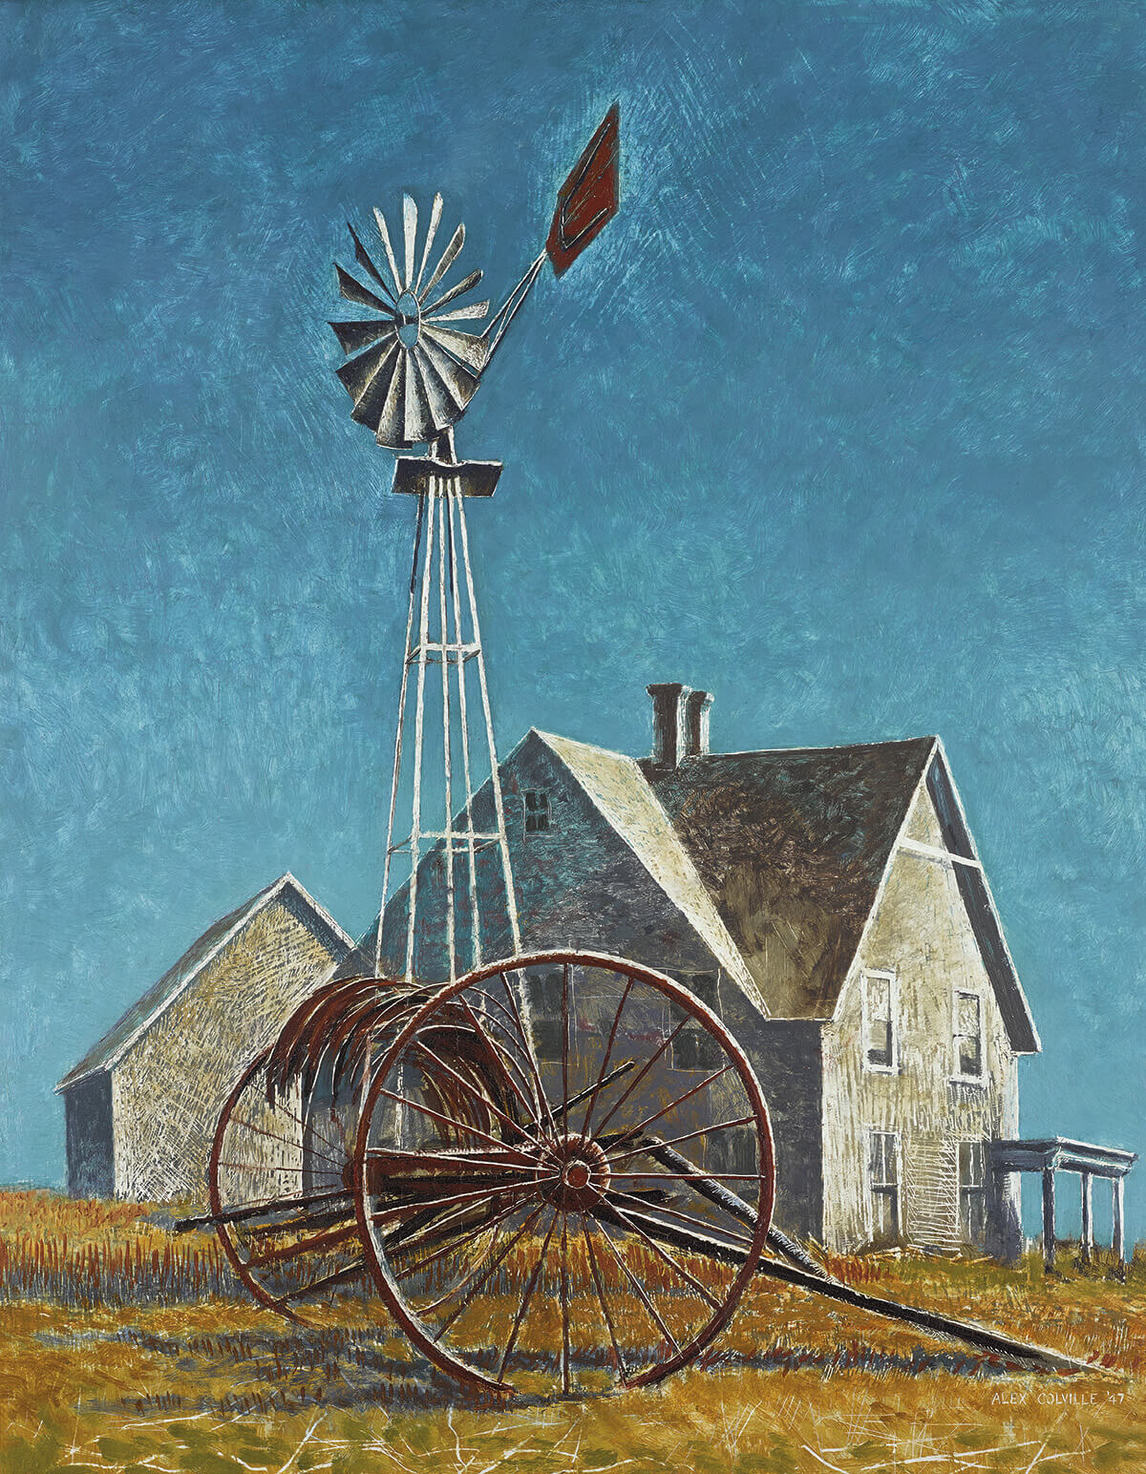 Art Canada Institute, Alex Colville, Windmill and Farm (Moulin à vent et ferme), 1947